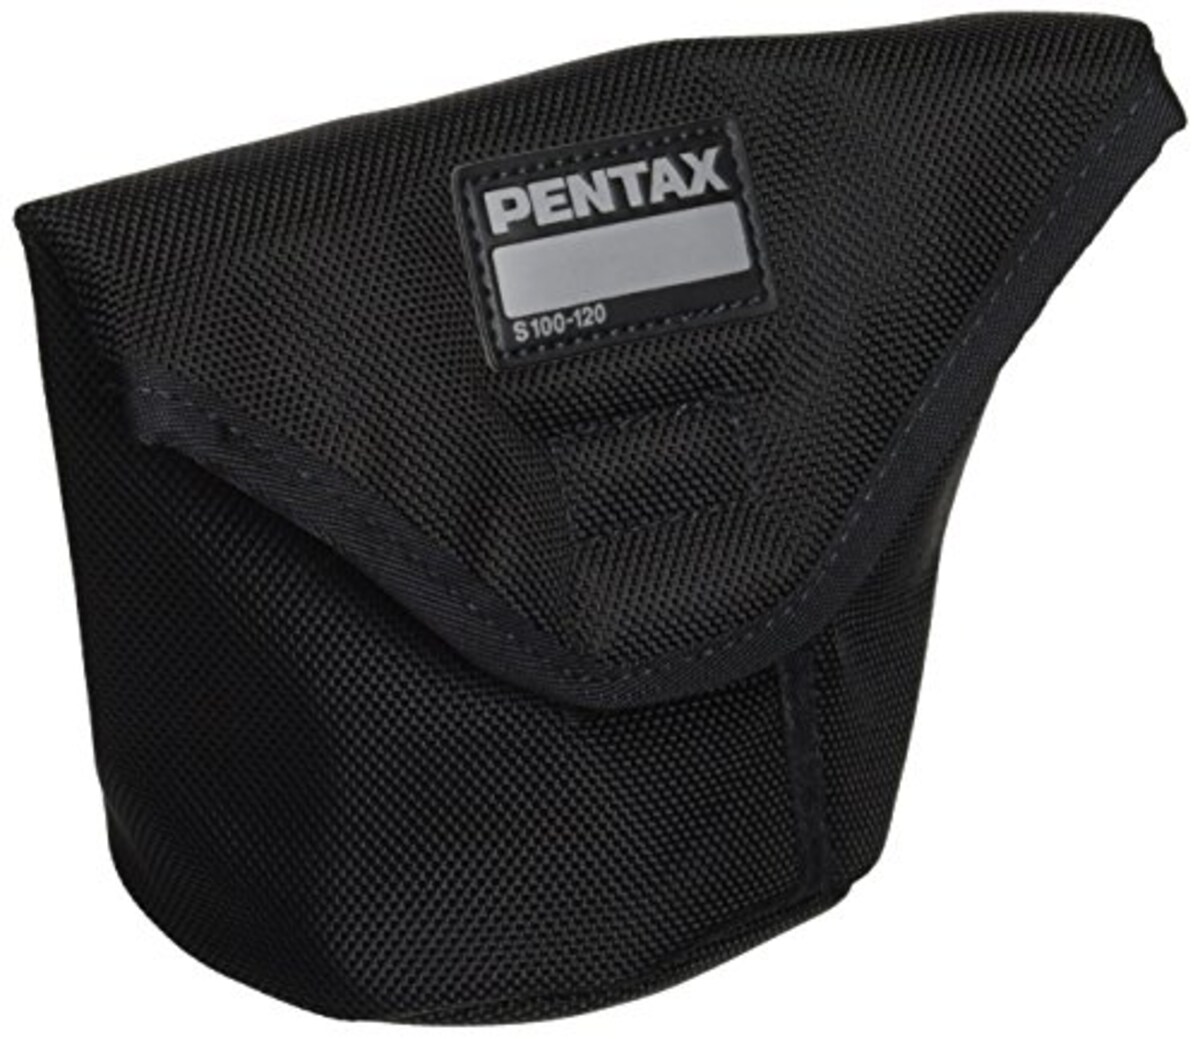  PENTAX レンズケース S100-120 37755画像2 